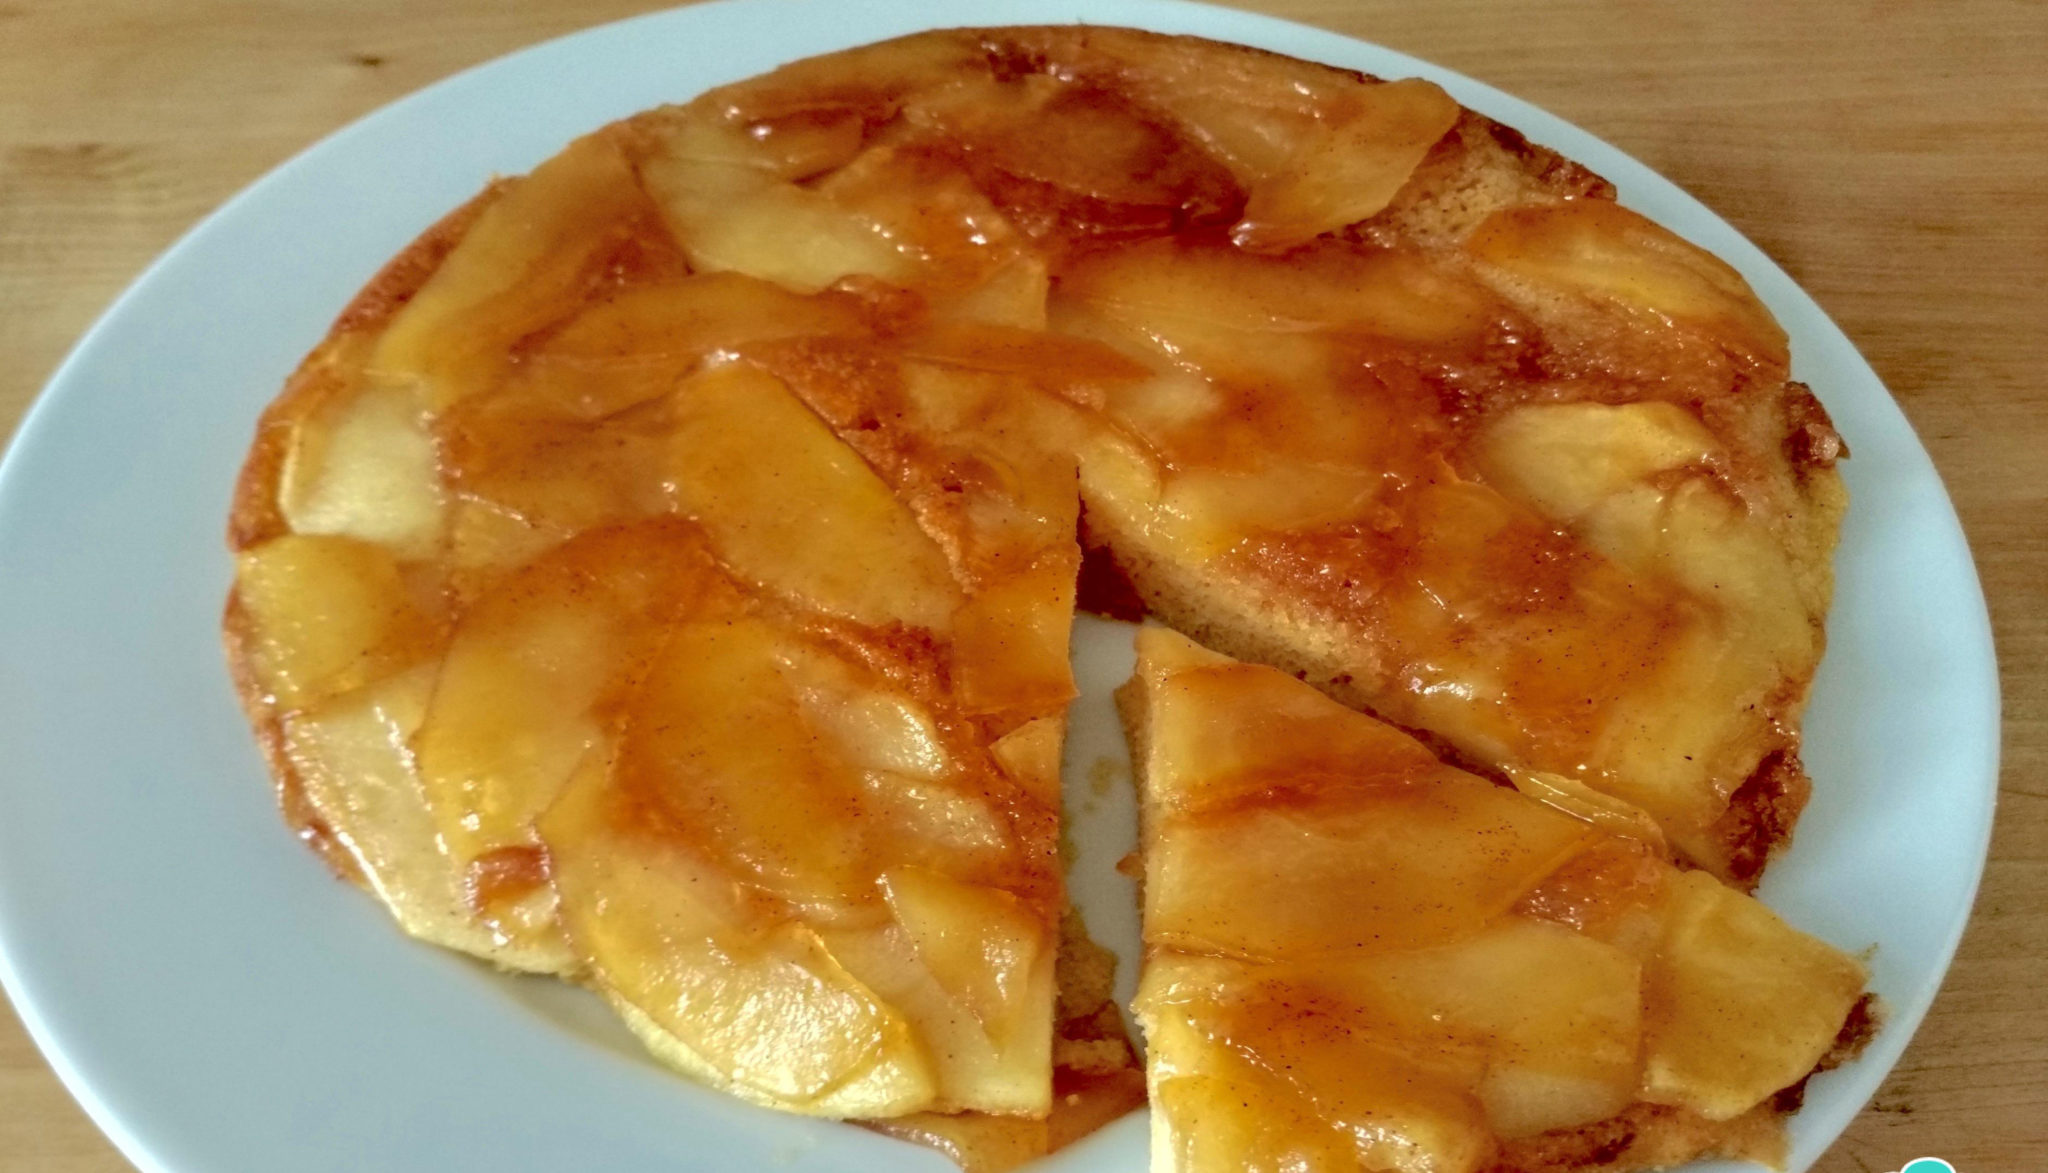 La torta di mele cotta in padella, buona, facile e con sole 110 calorie!